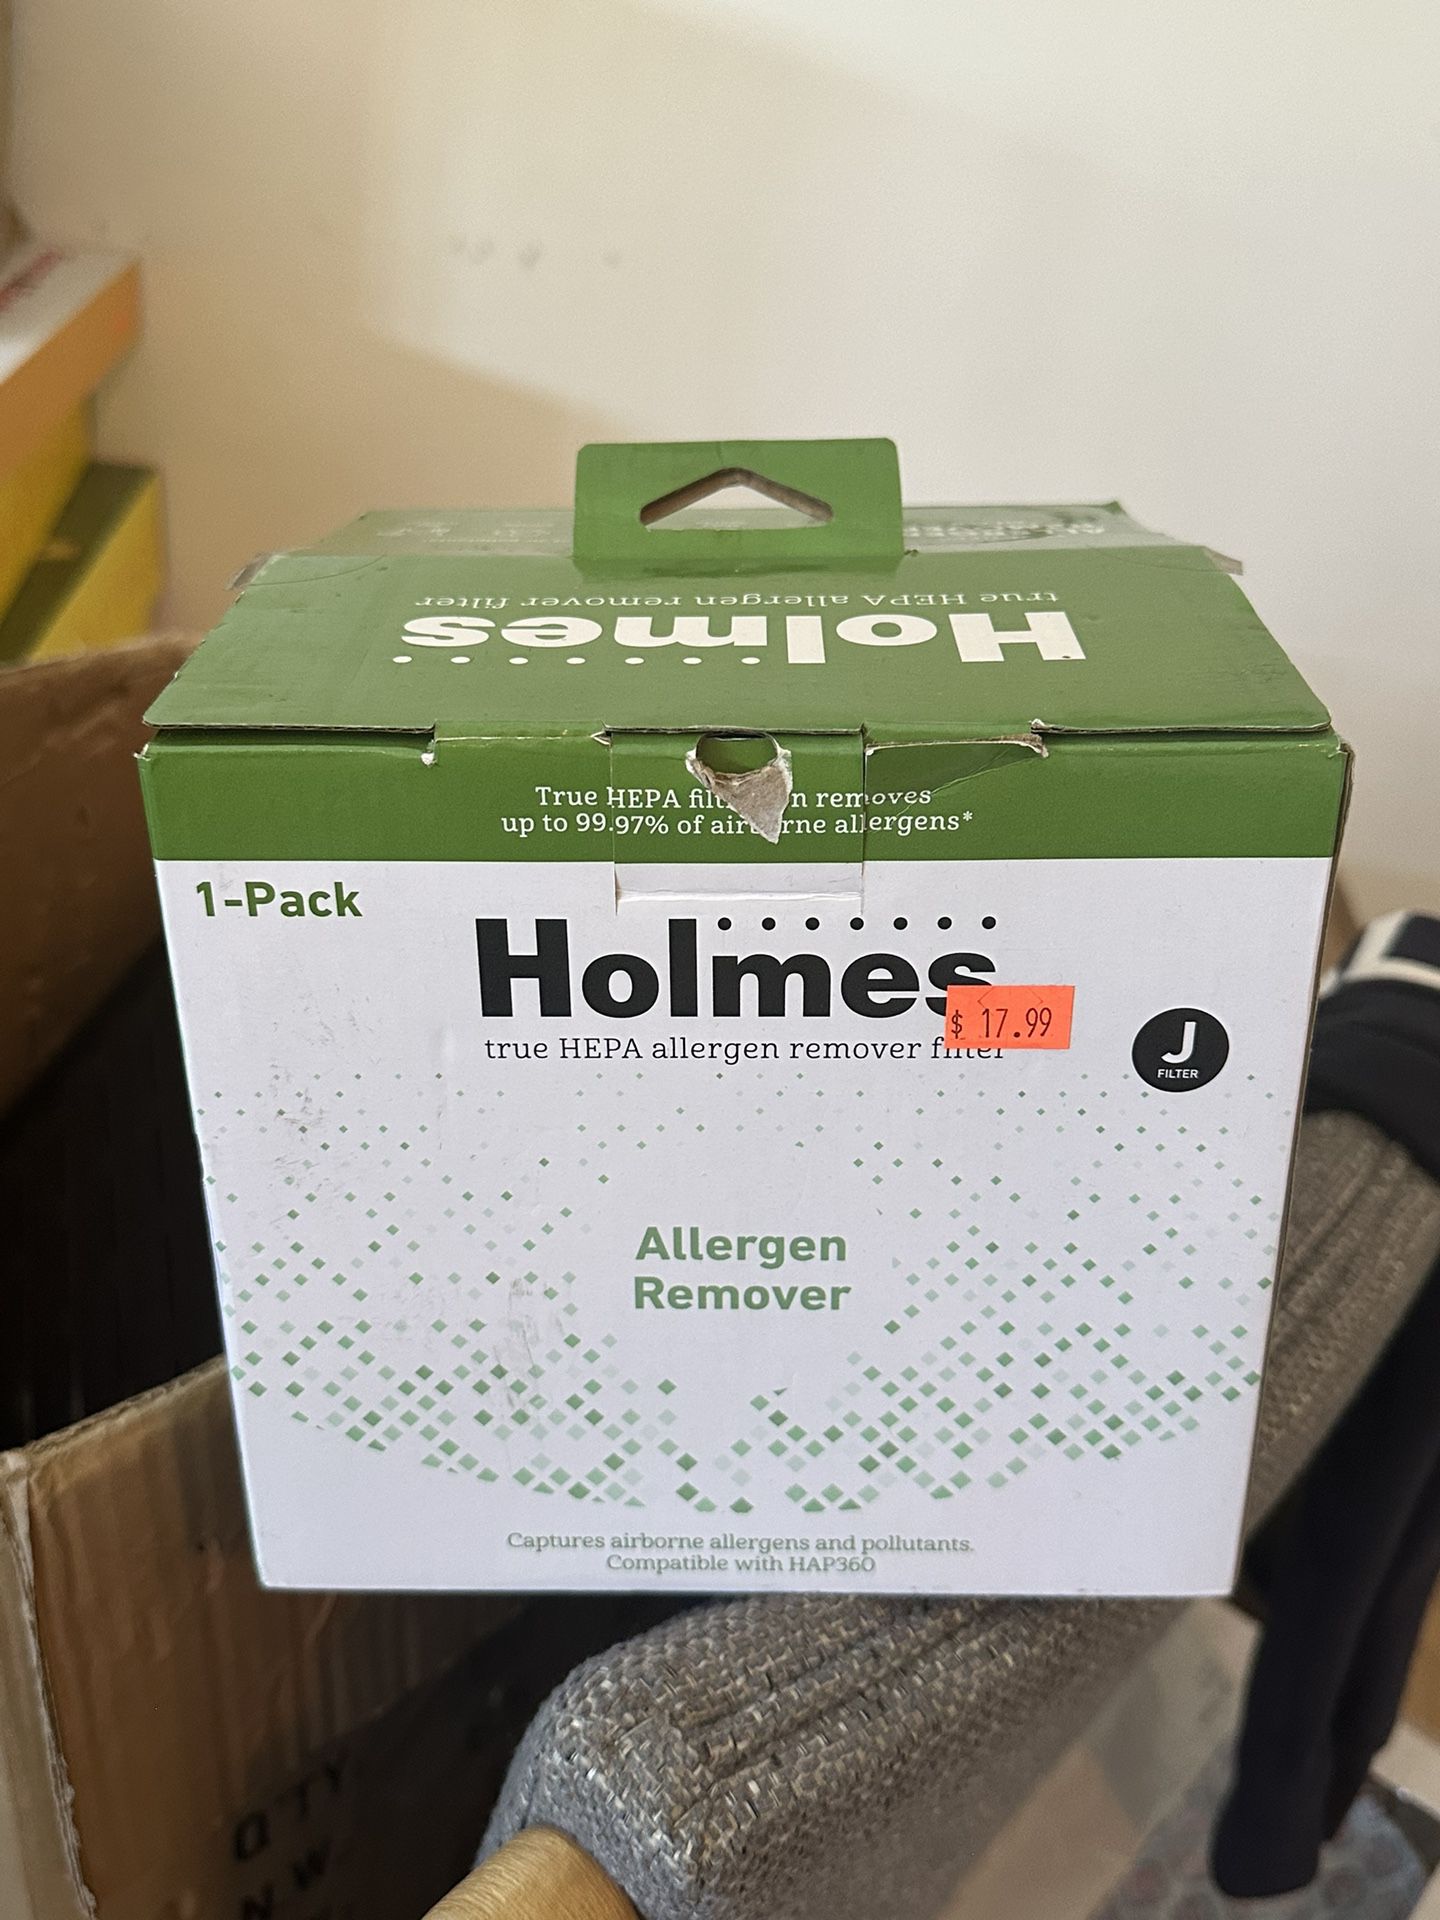 Holmes, Allergen Remover